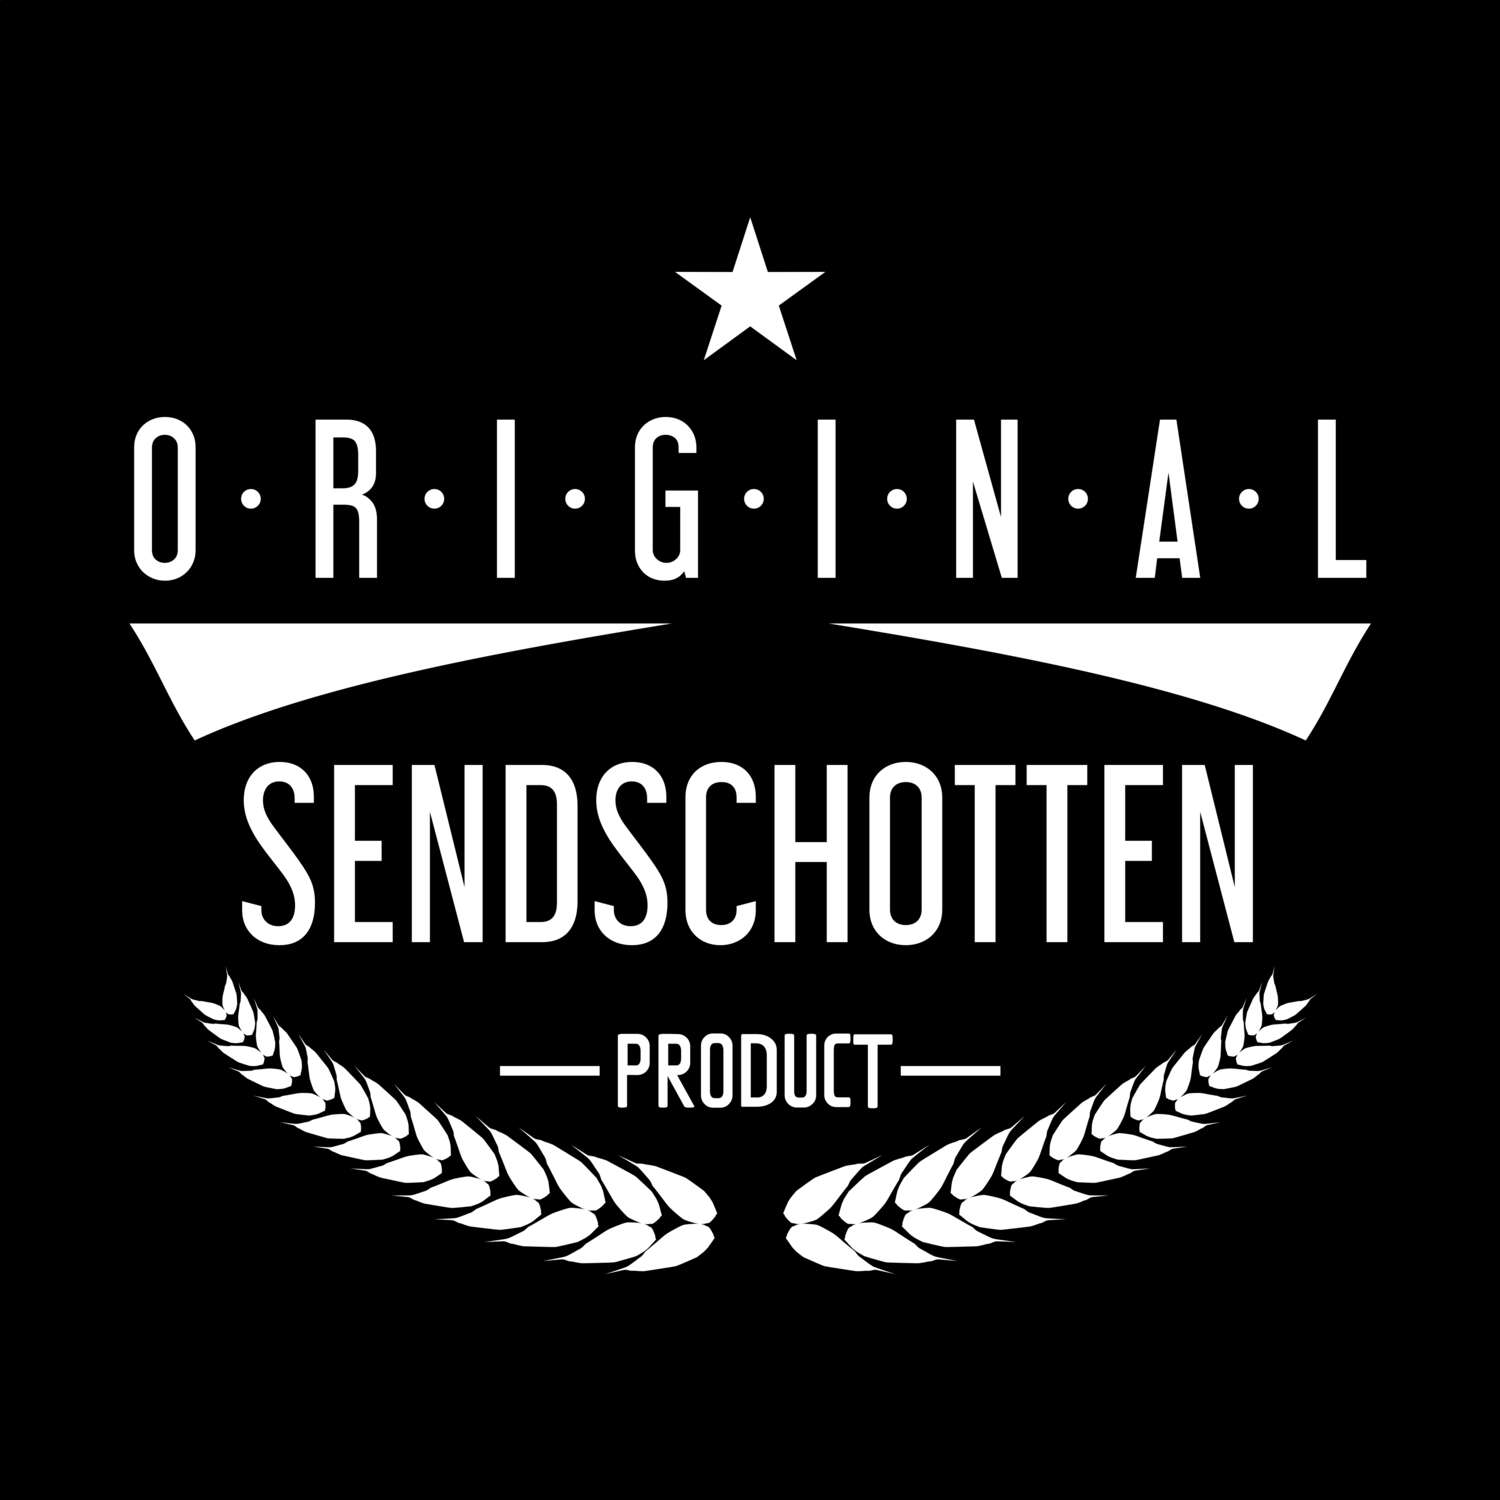 Sendschotten T-Shirt »Original Product«